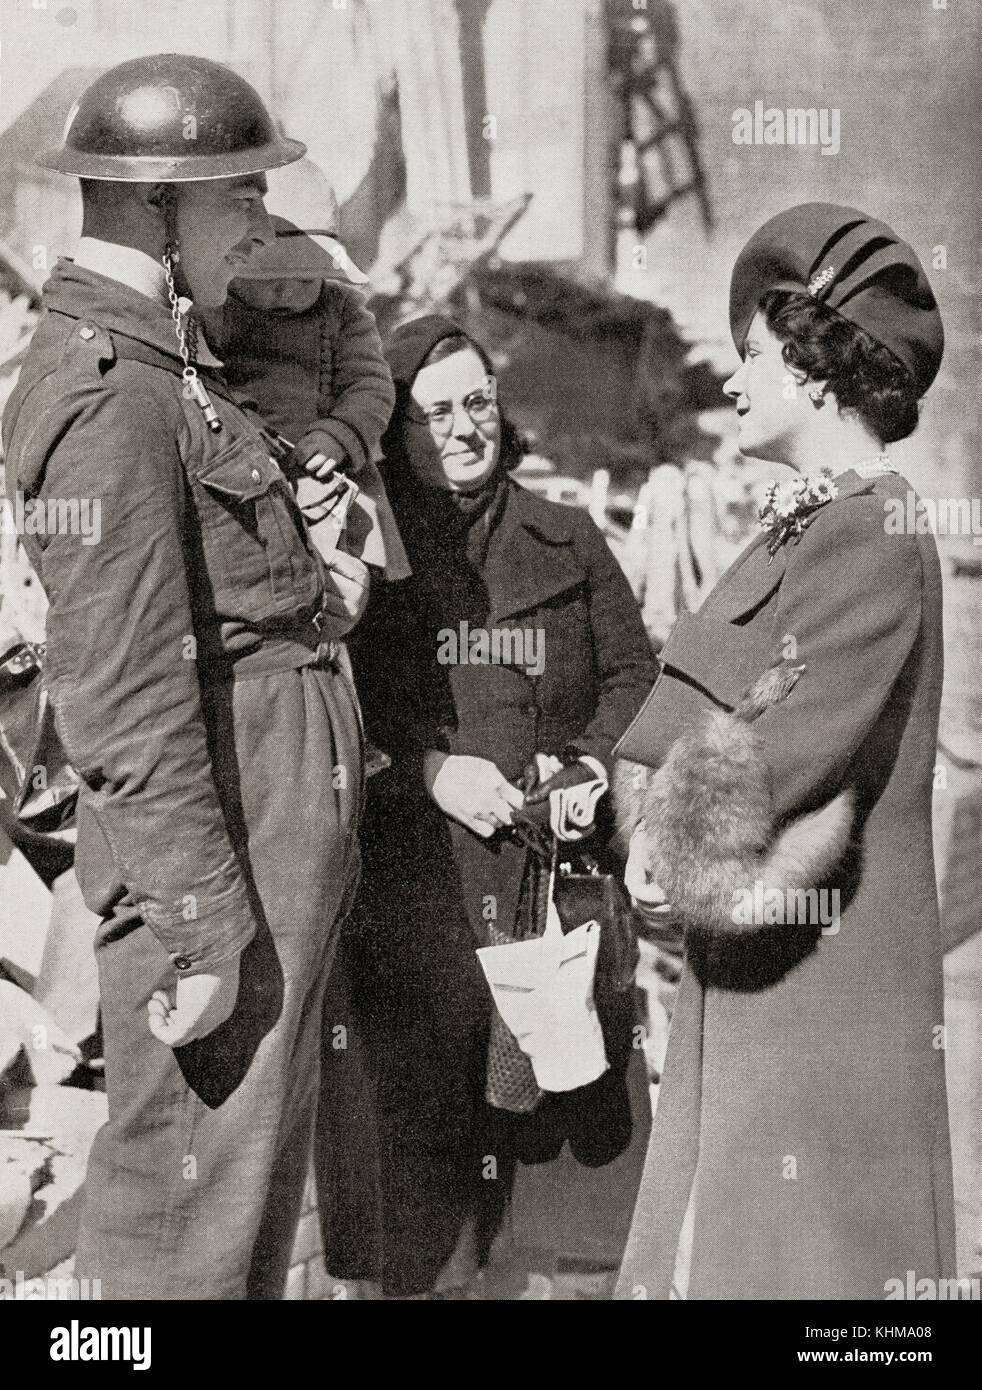 La visite de la reine Elizabeth ont bombardé des villages au cours de la DEUXIÈME GUERRE MONDIALE, vu ici à Plymouth. La Reine Elizabeth, la Reine Mère. Elizabeth Angela Marguerite Bowes-Lyon, 1900 - 2002. Épouse du roi George VI et mère de la reine Elizabeth II. Banque D'Images